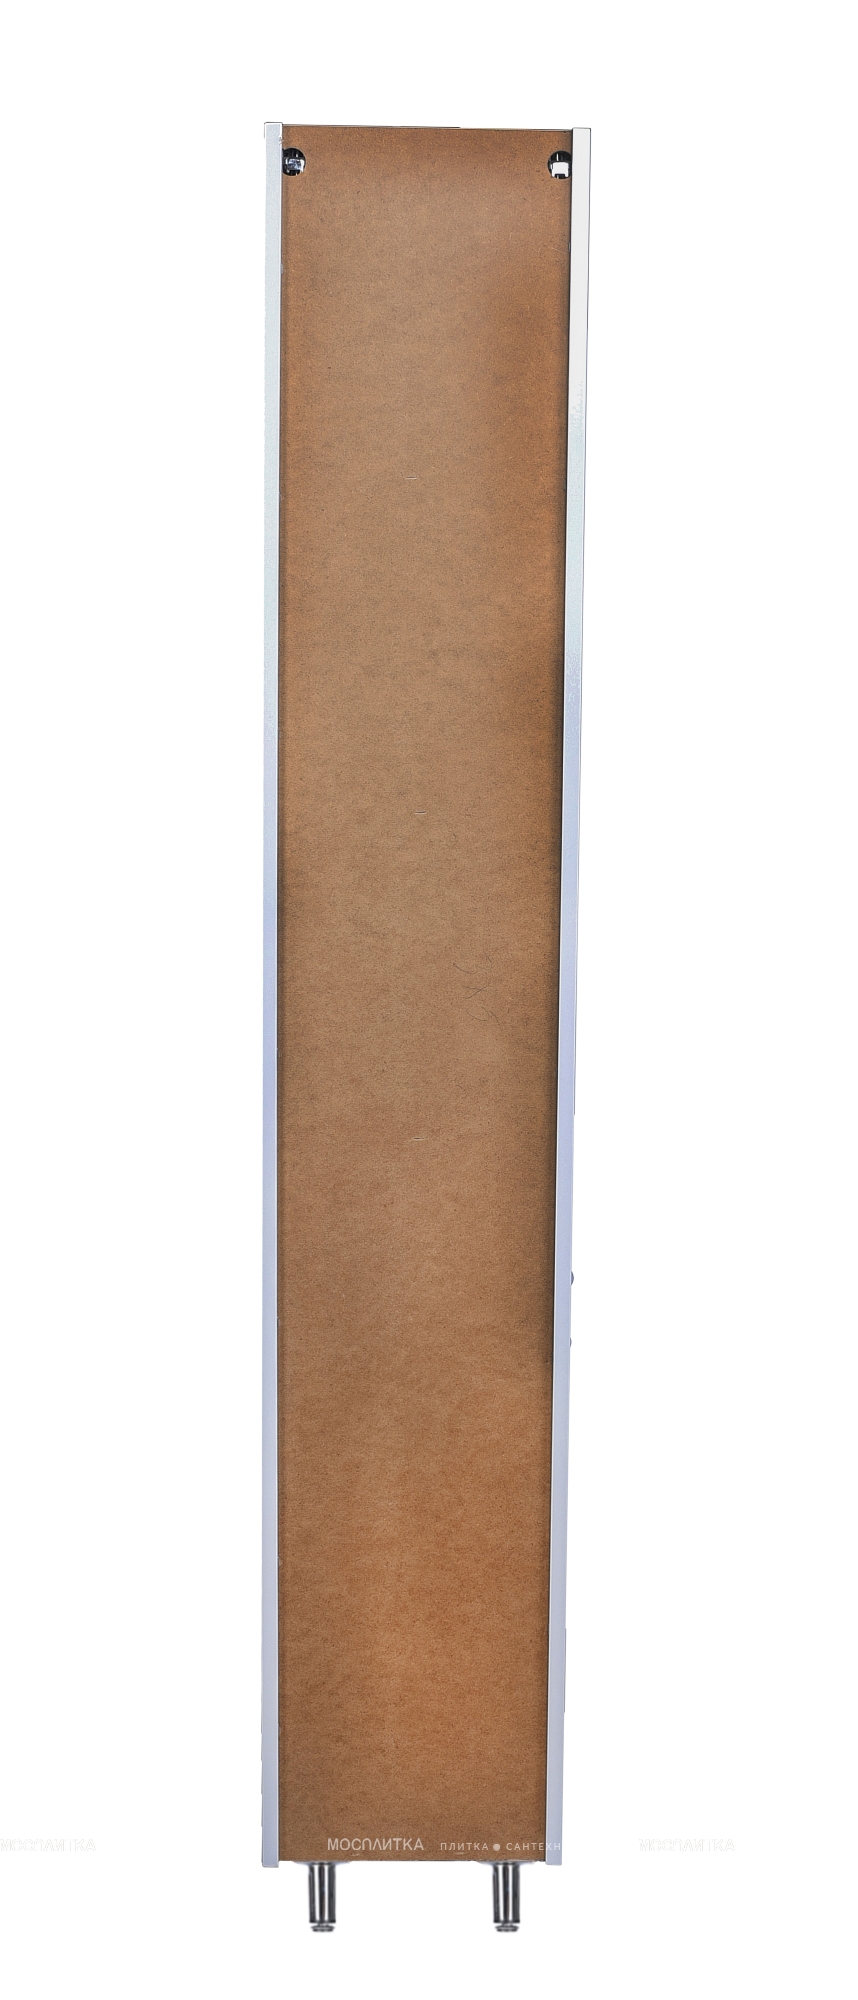 Шкаф-пенал Style Line Каре 30 см СС-00002271 универсальный белый с корзиной - изображение 6